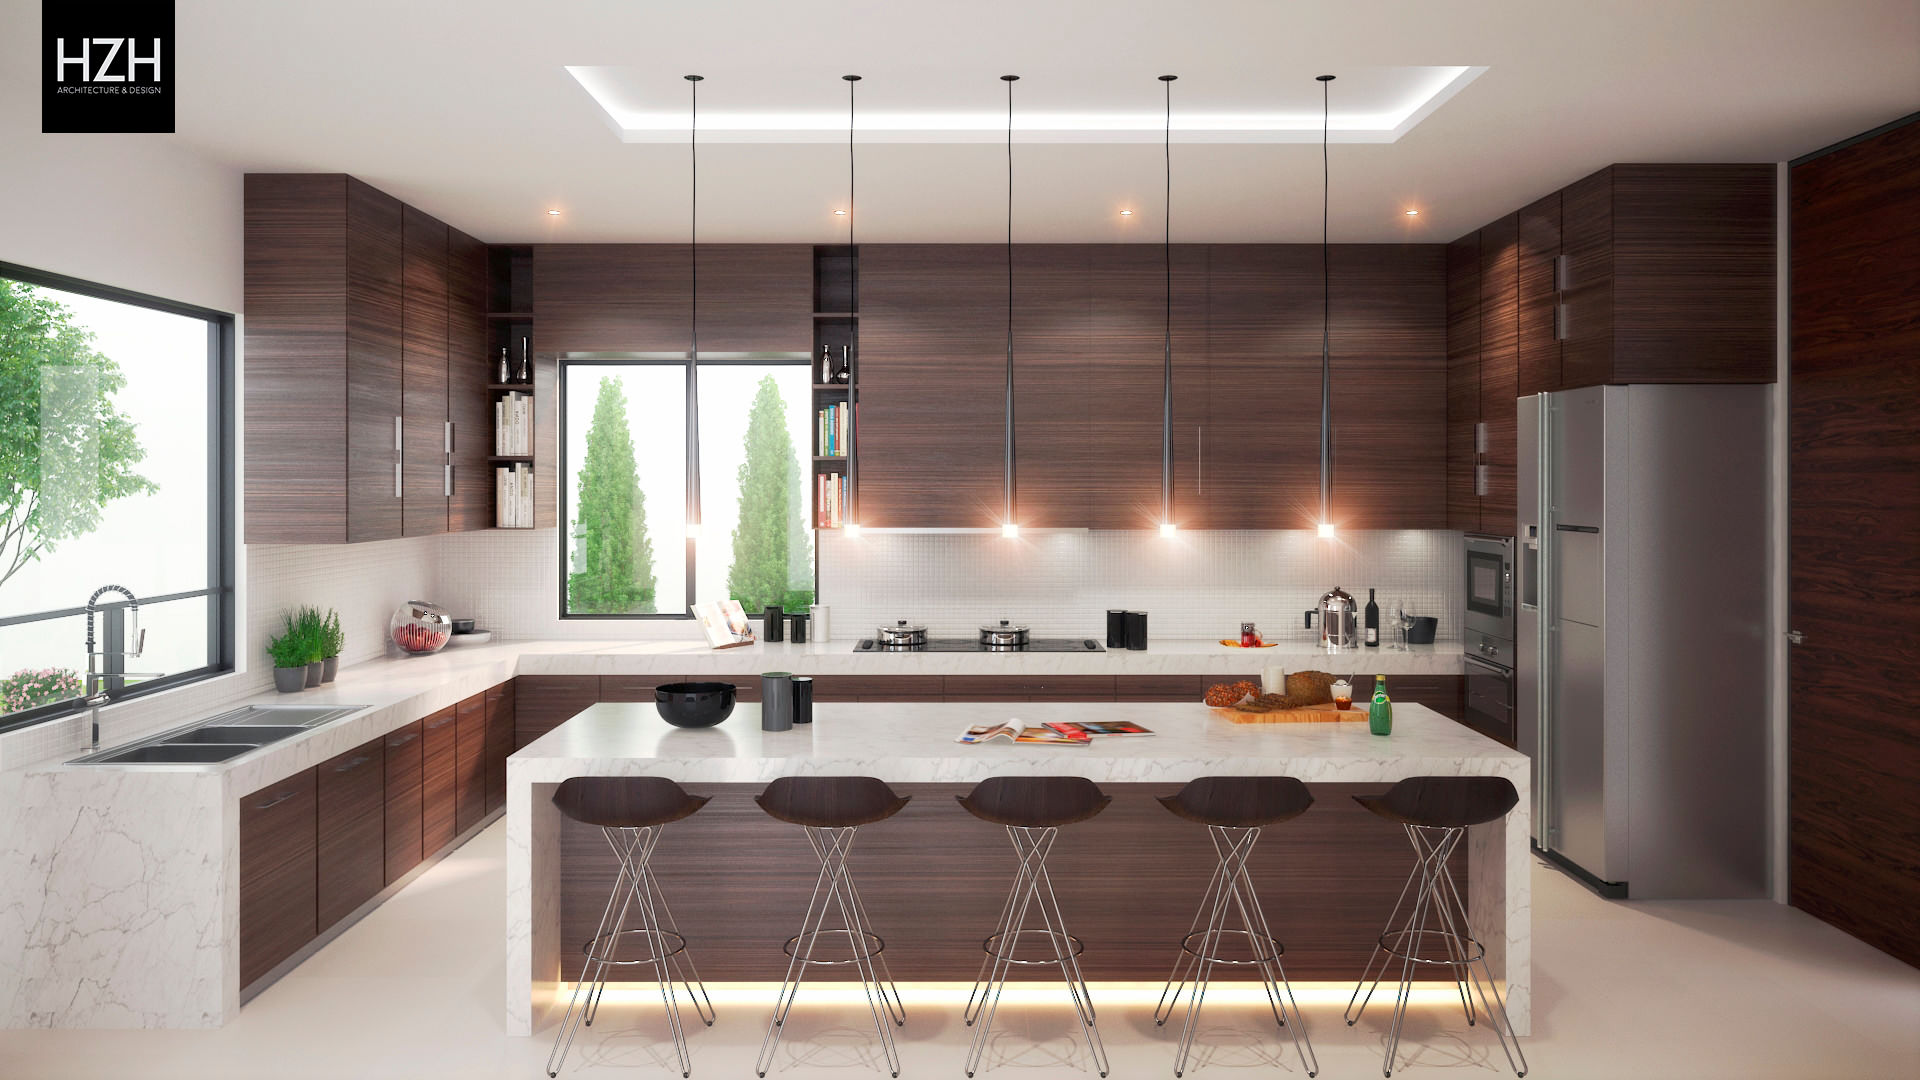 Residencia Contry La Silla, HZH Arquitectura & Diseño HZH Arquitectura & Diseño Modern kitchen